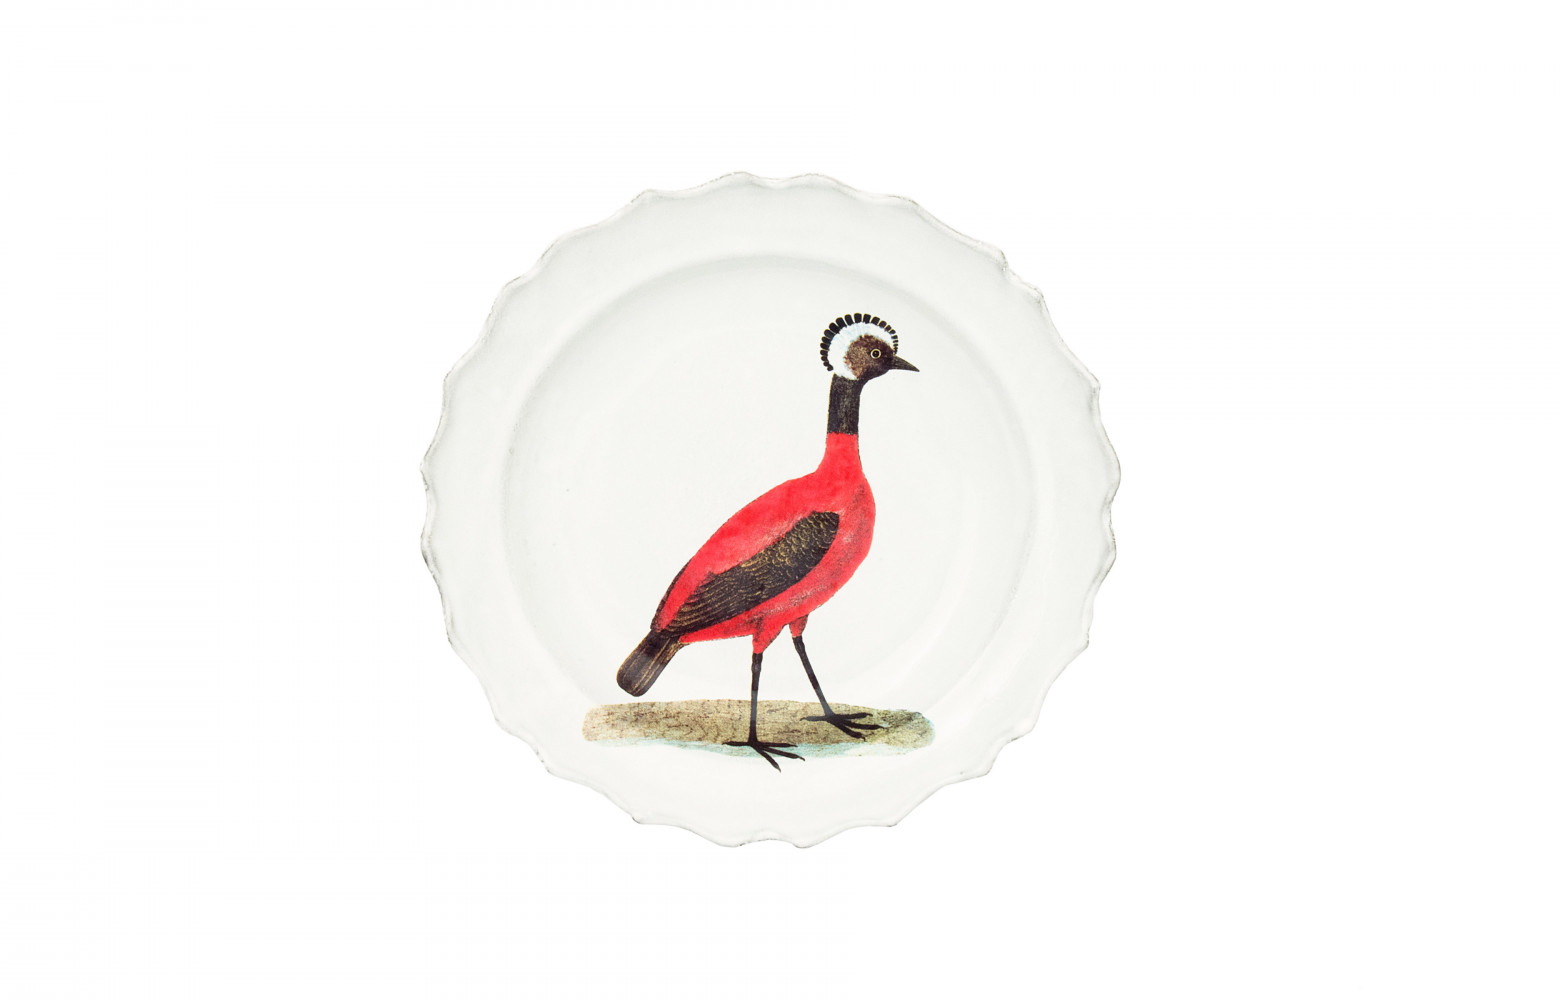 Assiette creuse Red Peruvian Hen, en céramique émaillée, design John Derian, 90 €. Astier de Villatte.